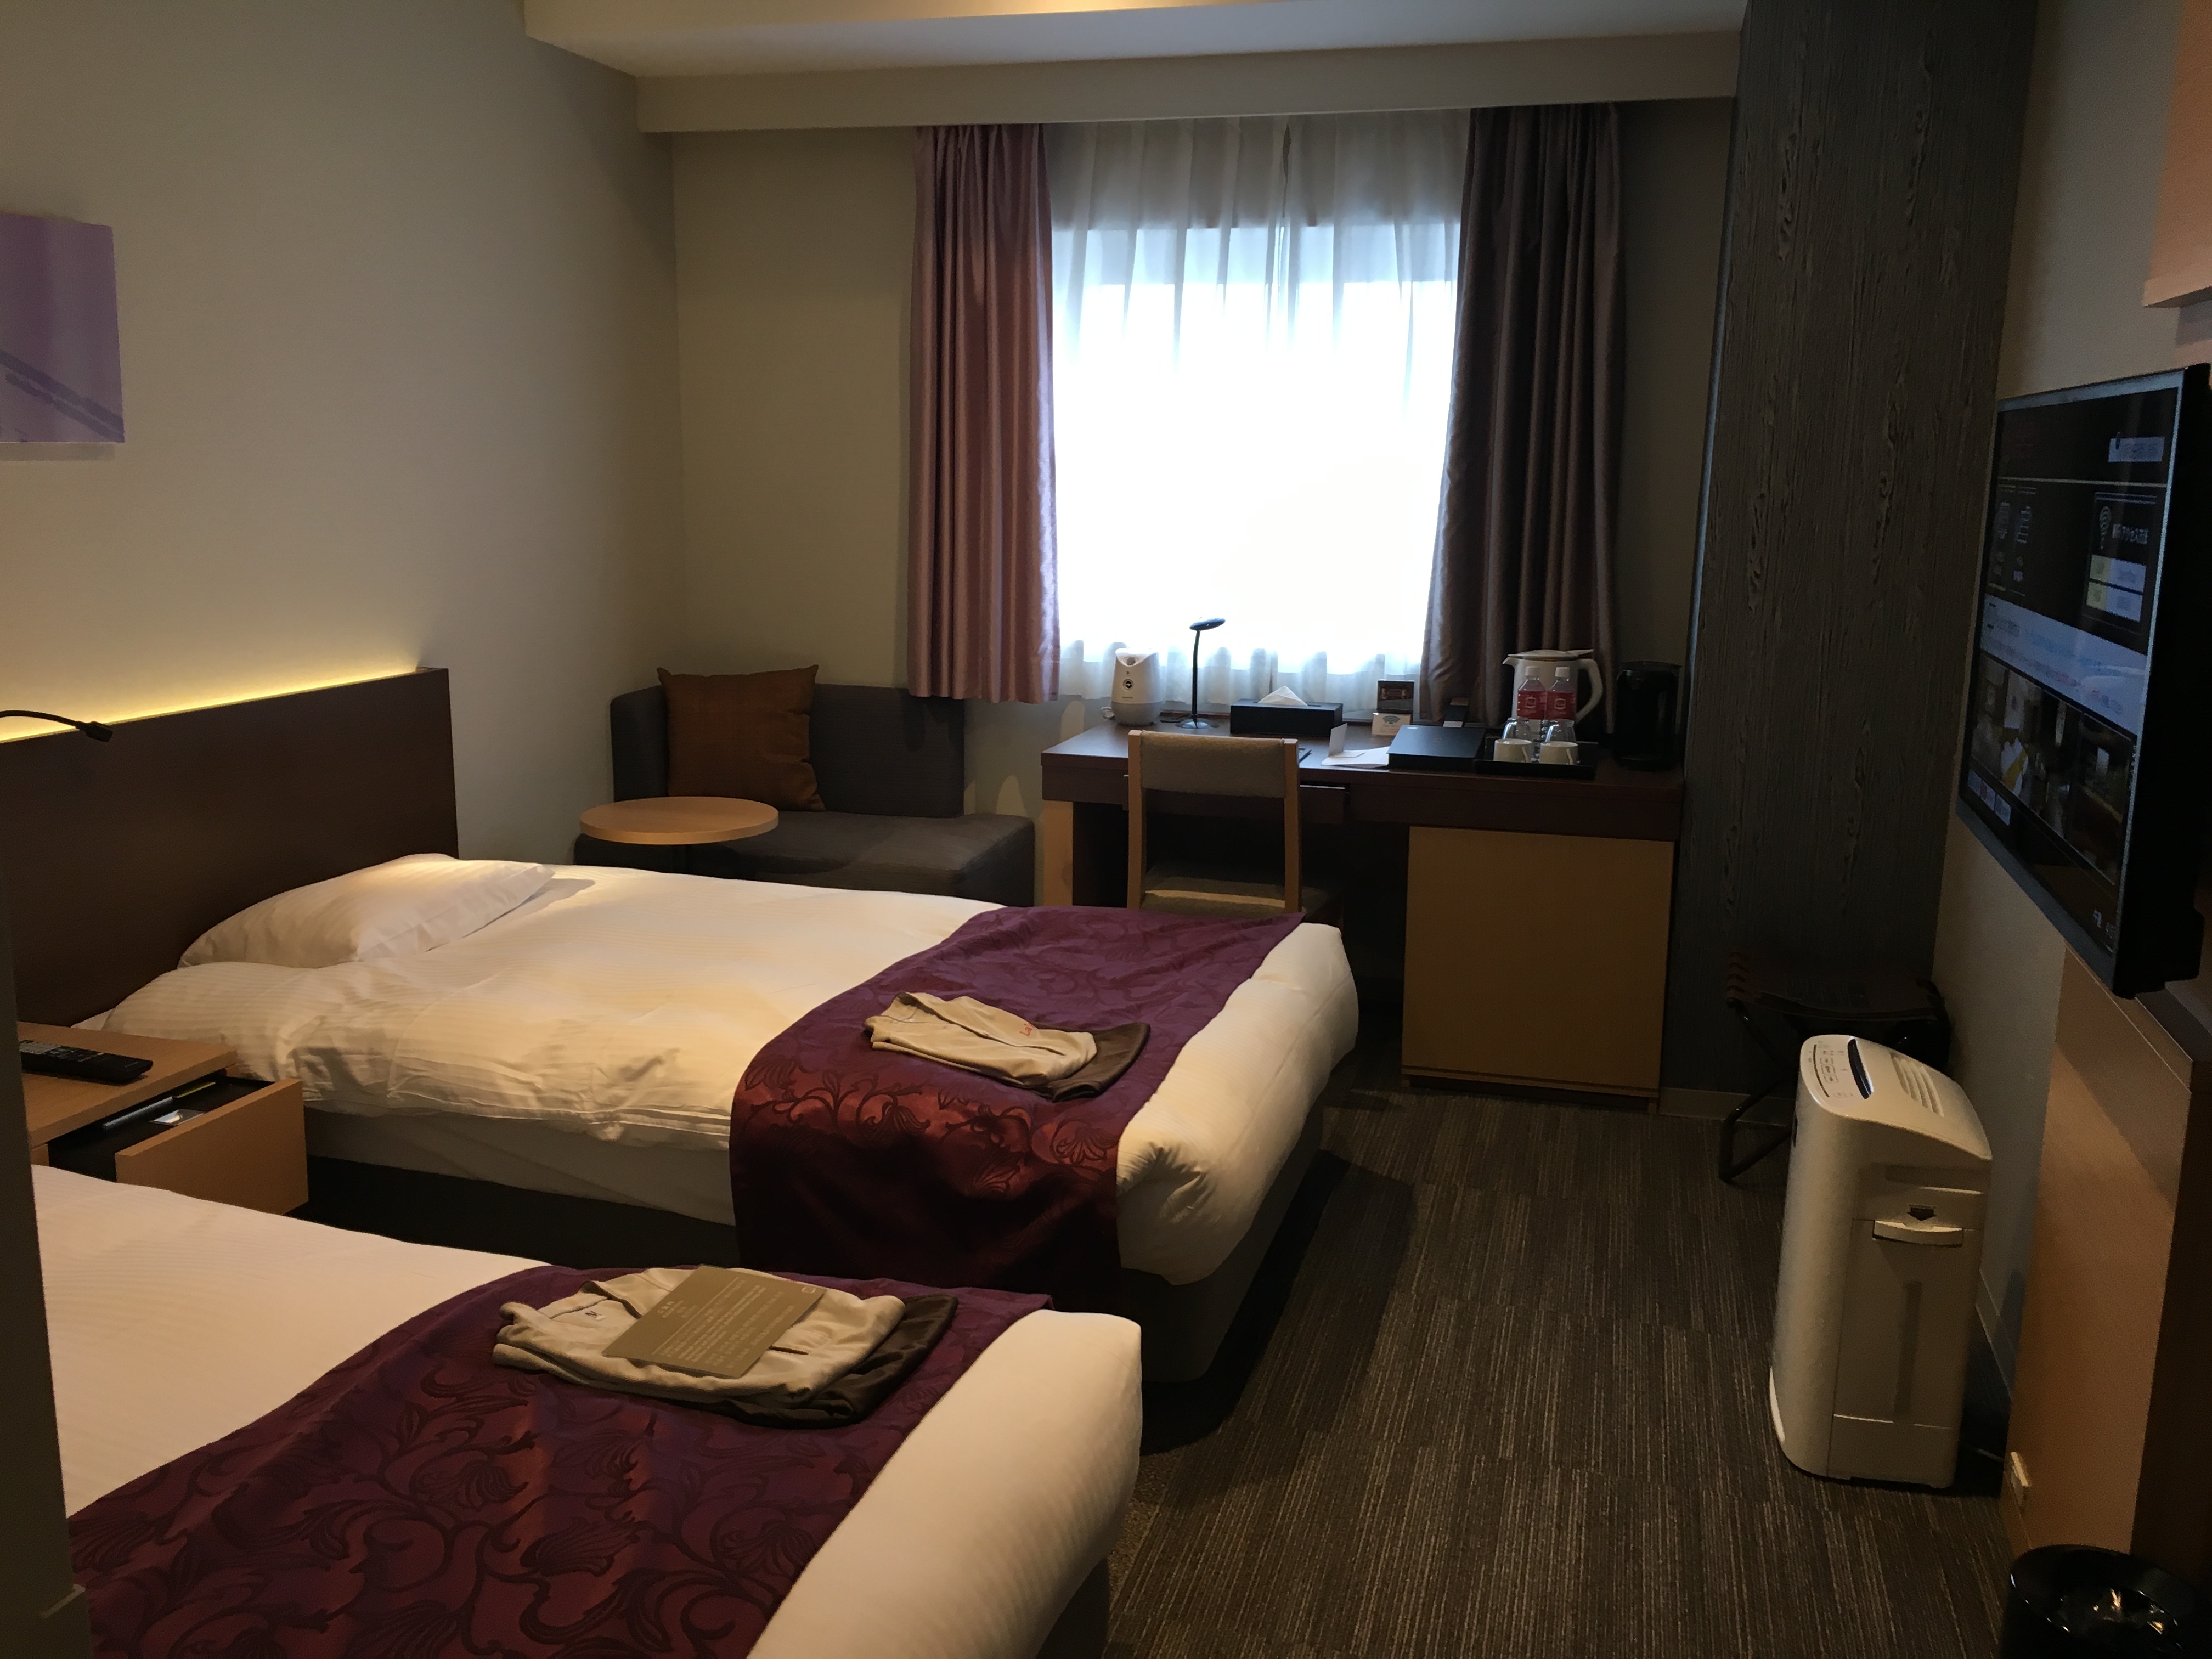 札幌で利用したホテル、ラ・ジェント・ステイの感想